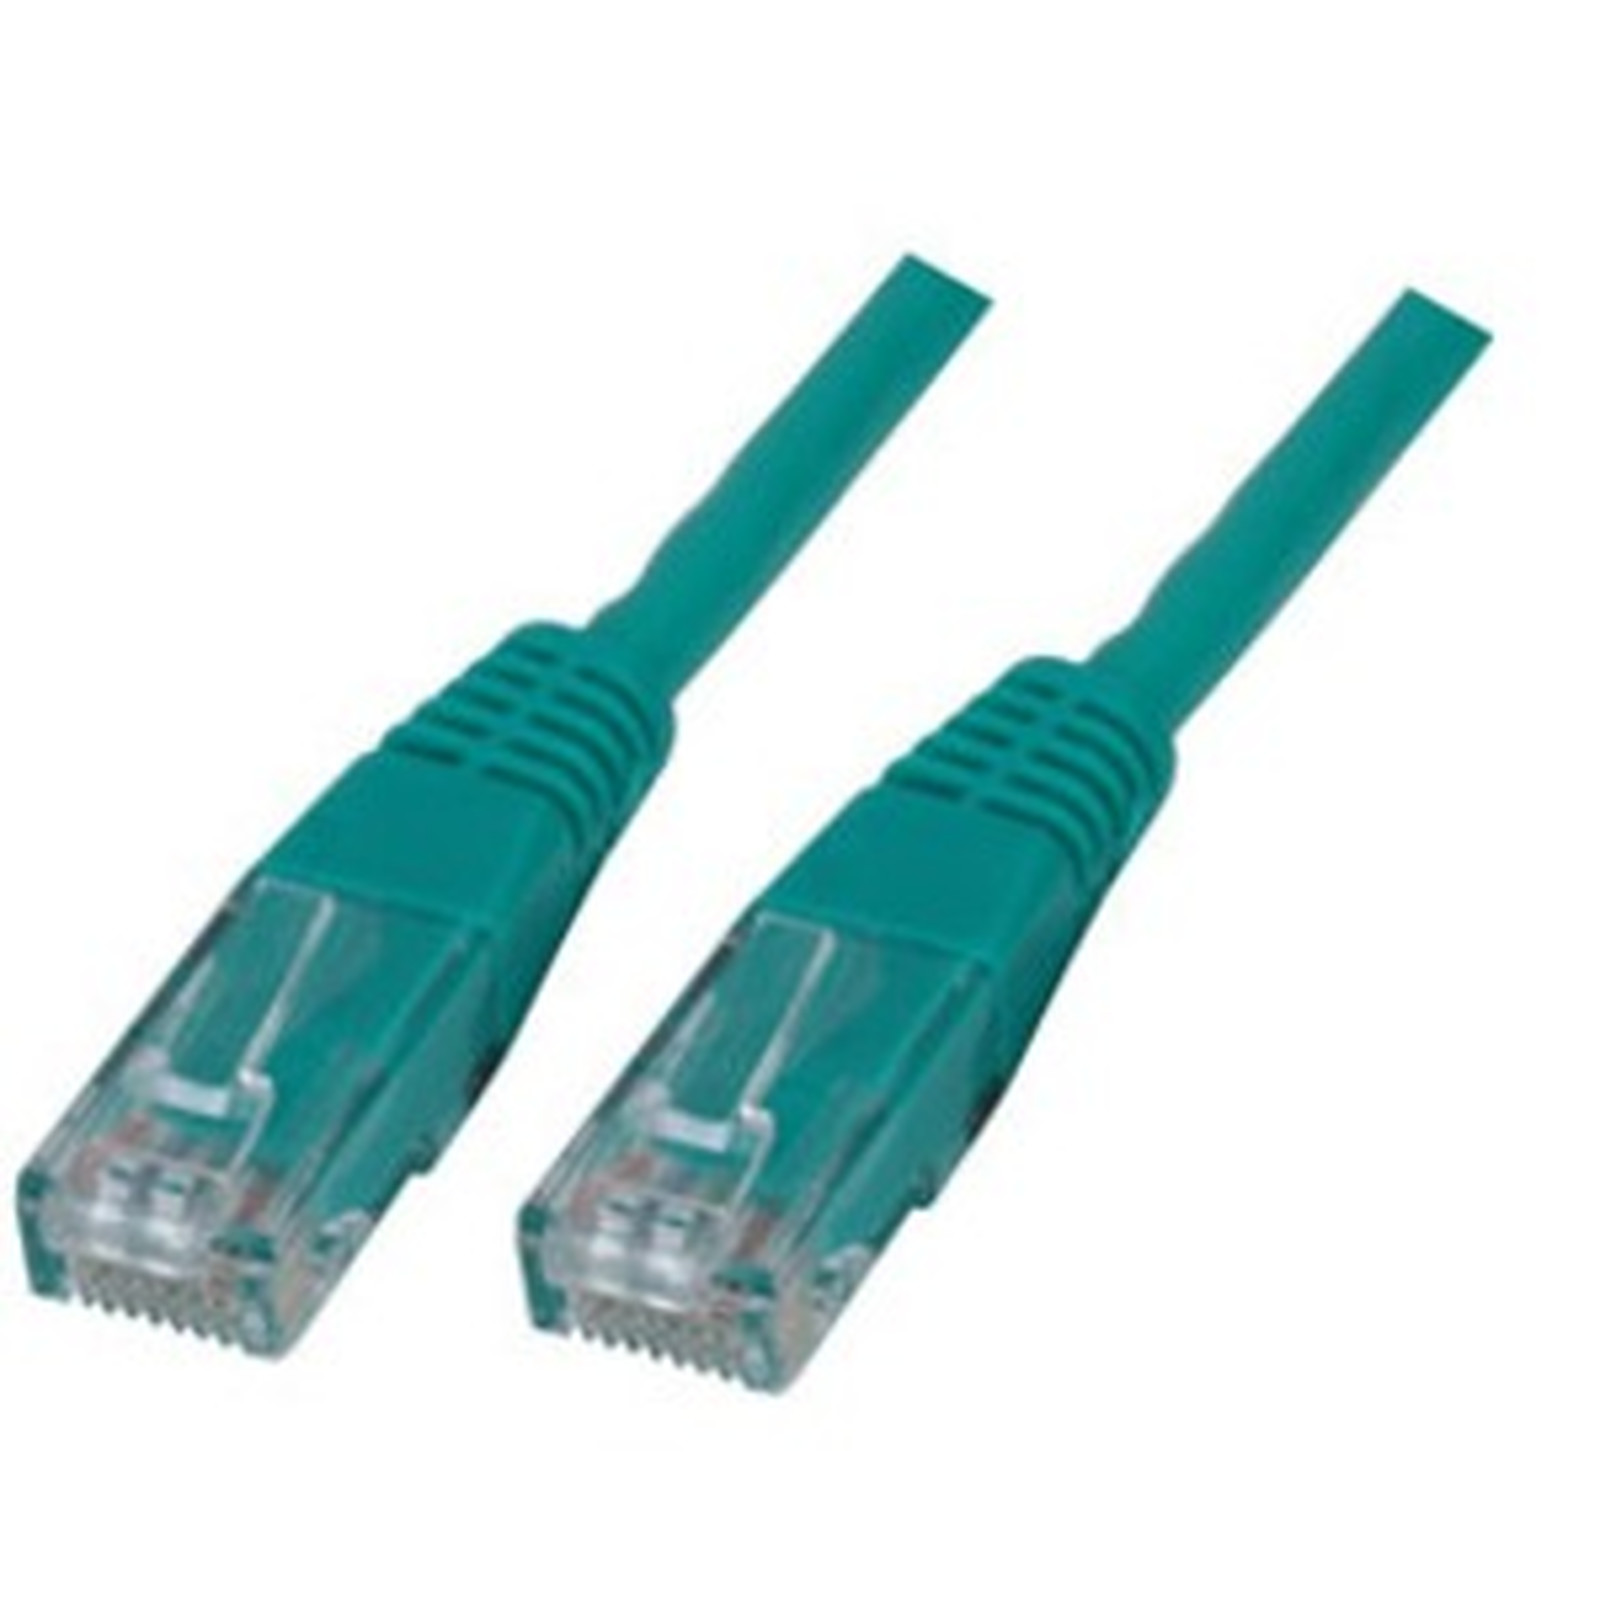 Cable RJ45 categorie 6 U/UTP 7.5 m (Vert) - Cable RJ45 Generique